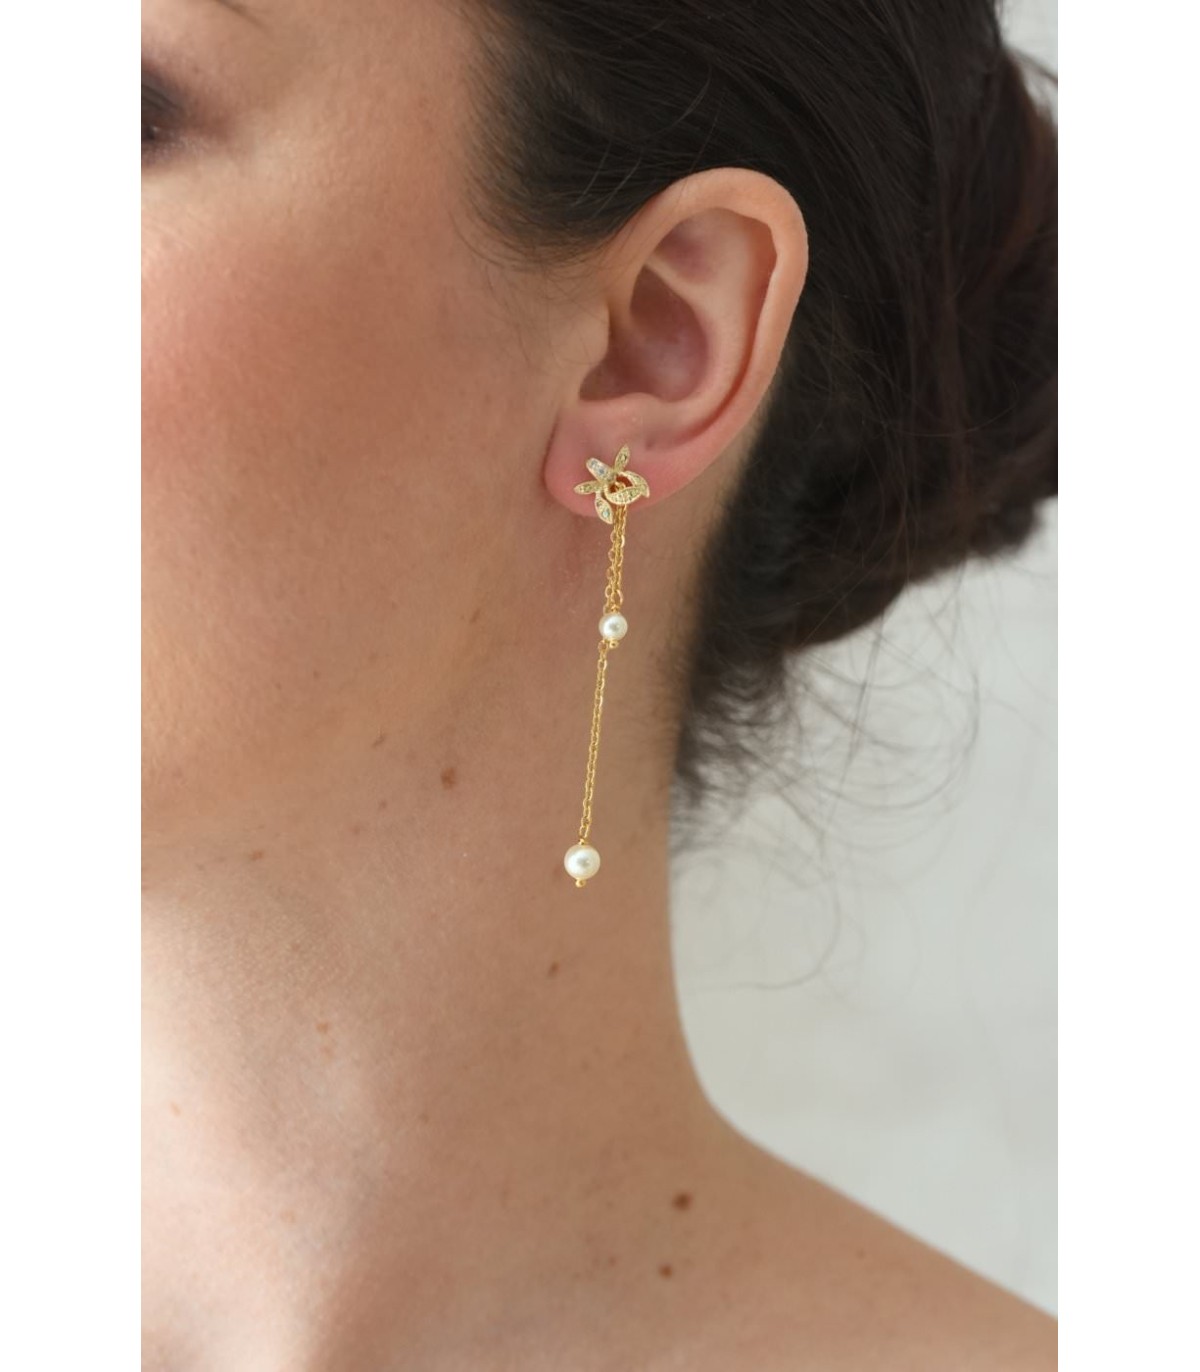 Boucles d'oreilles Capucine pour la mariée, très petites et discrètes avec une perle nacrée et quelques strass.